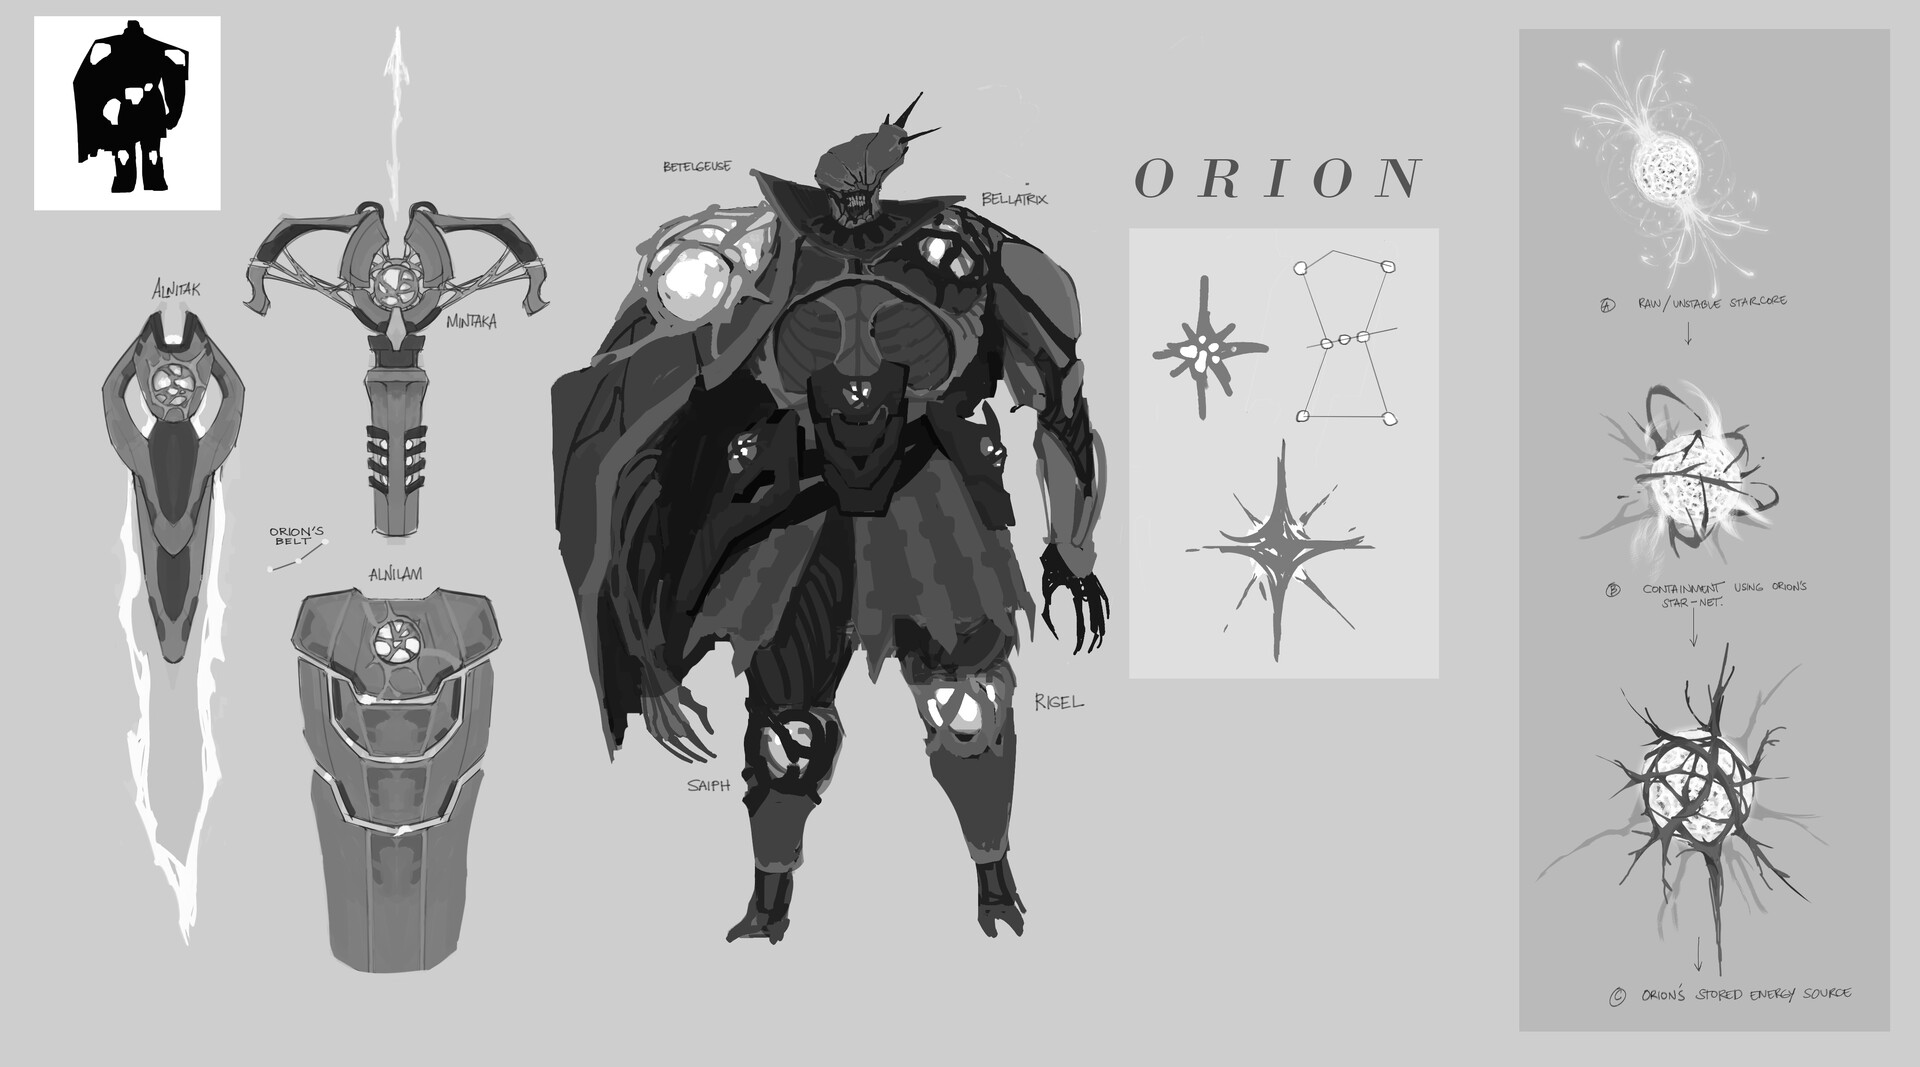 ArtStation - Heroine and Orion